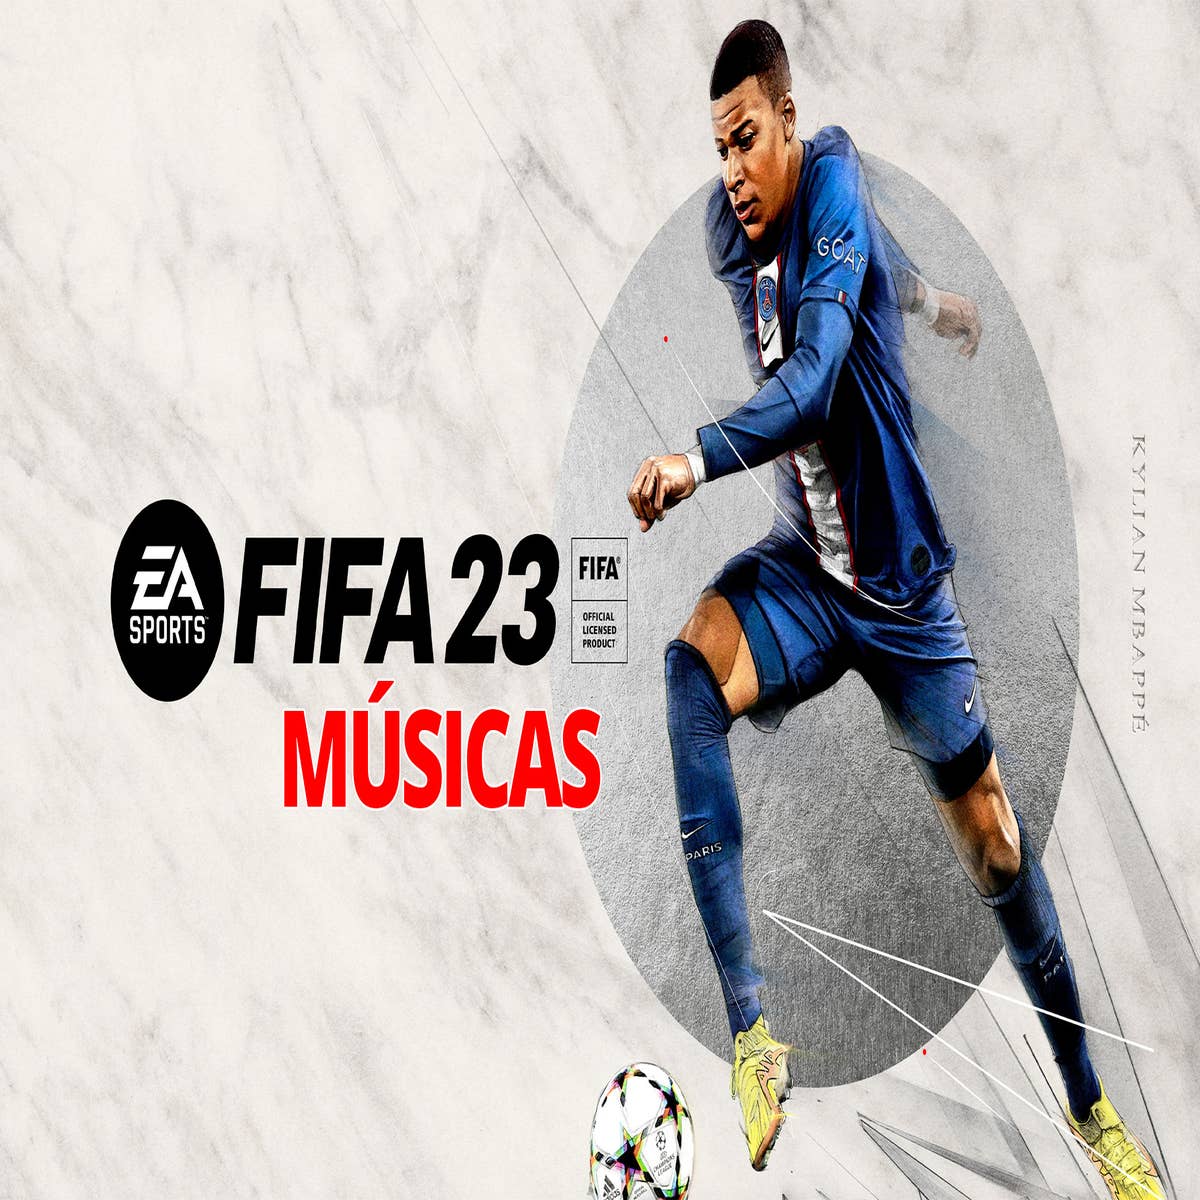 FIFA 23 - Jovens promessas, estrelas escondidas e jogadores com